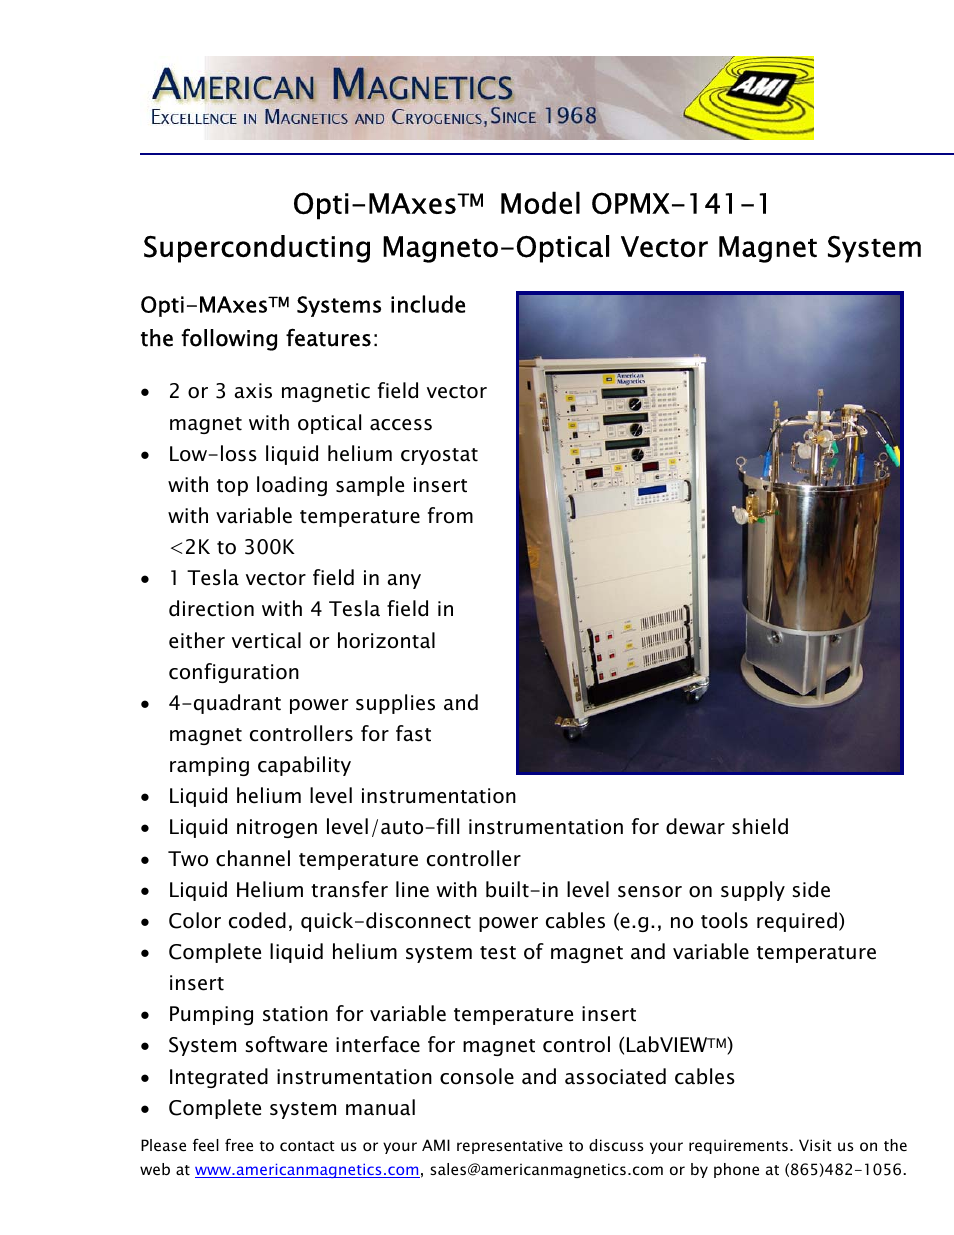 OPMX-141-1